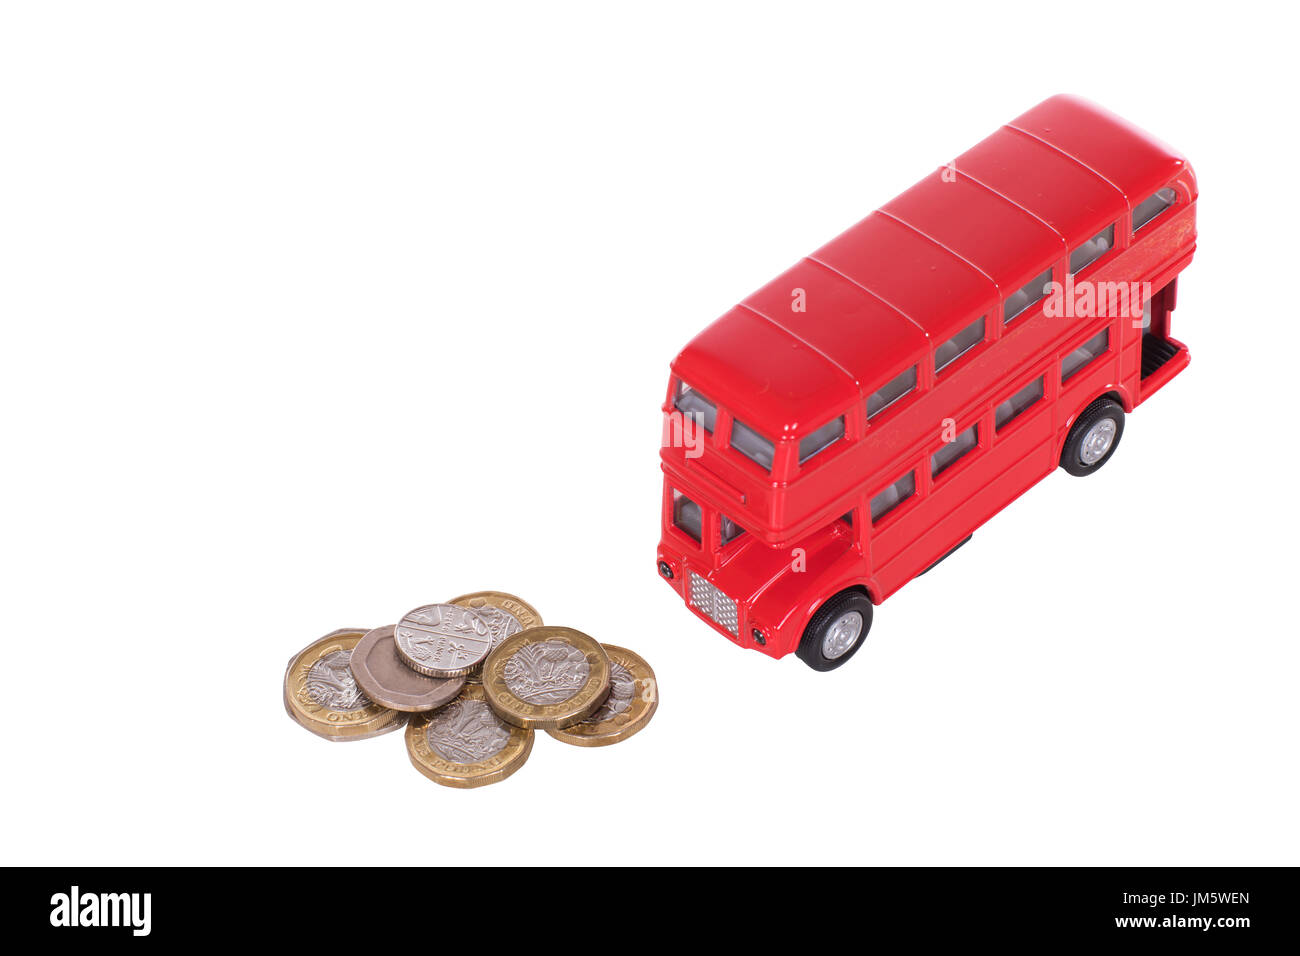 Bus à impériale rouge avec une pile de sterling lâche un concept de changement dans les coûts des transports publics en Grande-Bretagne isolated on white Banque D'Images